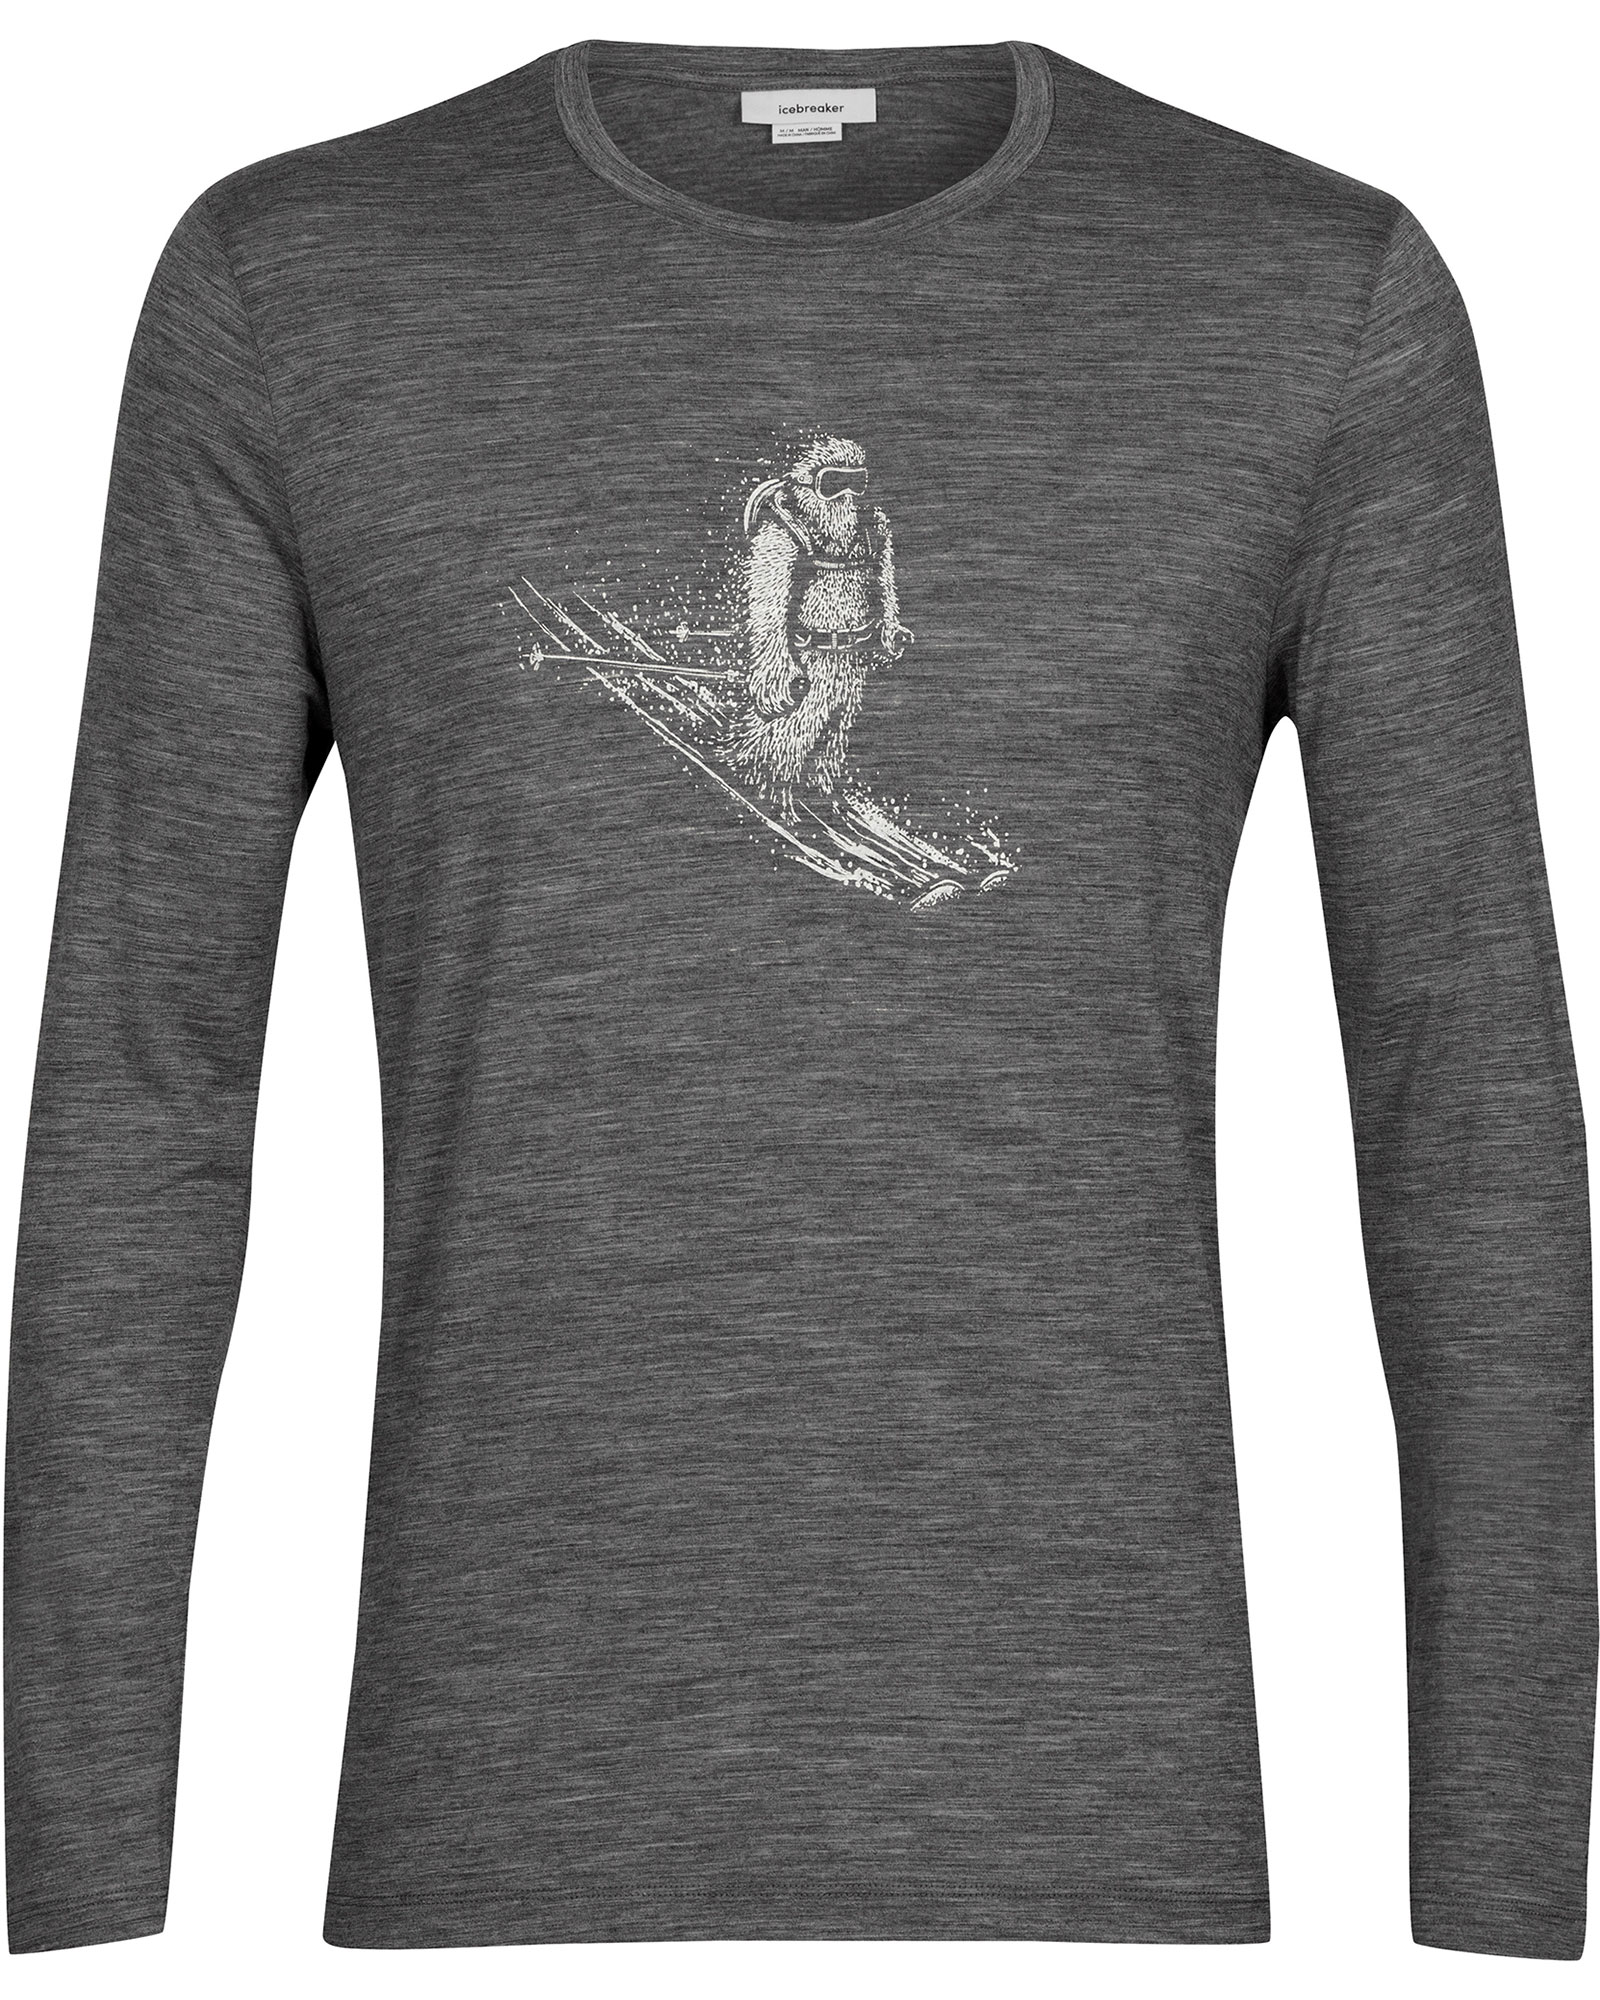 Icebreaker Tech Lite 2 Skiing Yeti Men’s Merino Long Sleeve T Shirt - Gritstone Heather M